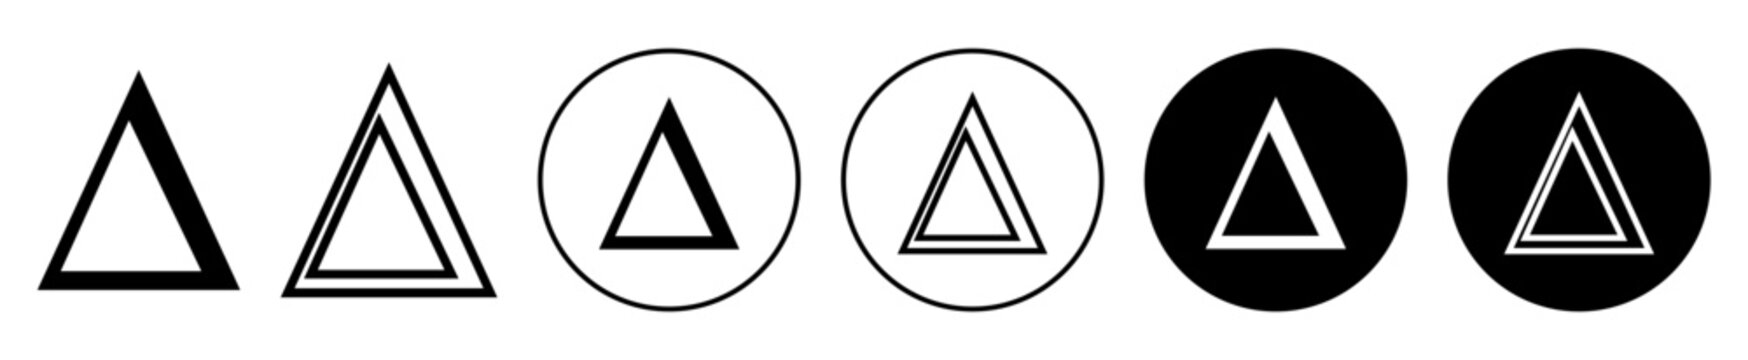 delta symbol set. greek letter delta vector symbol in black filled and outlined style.